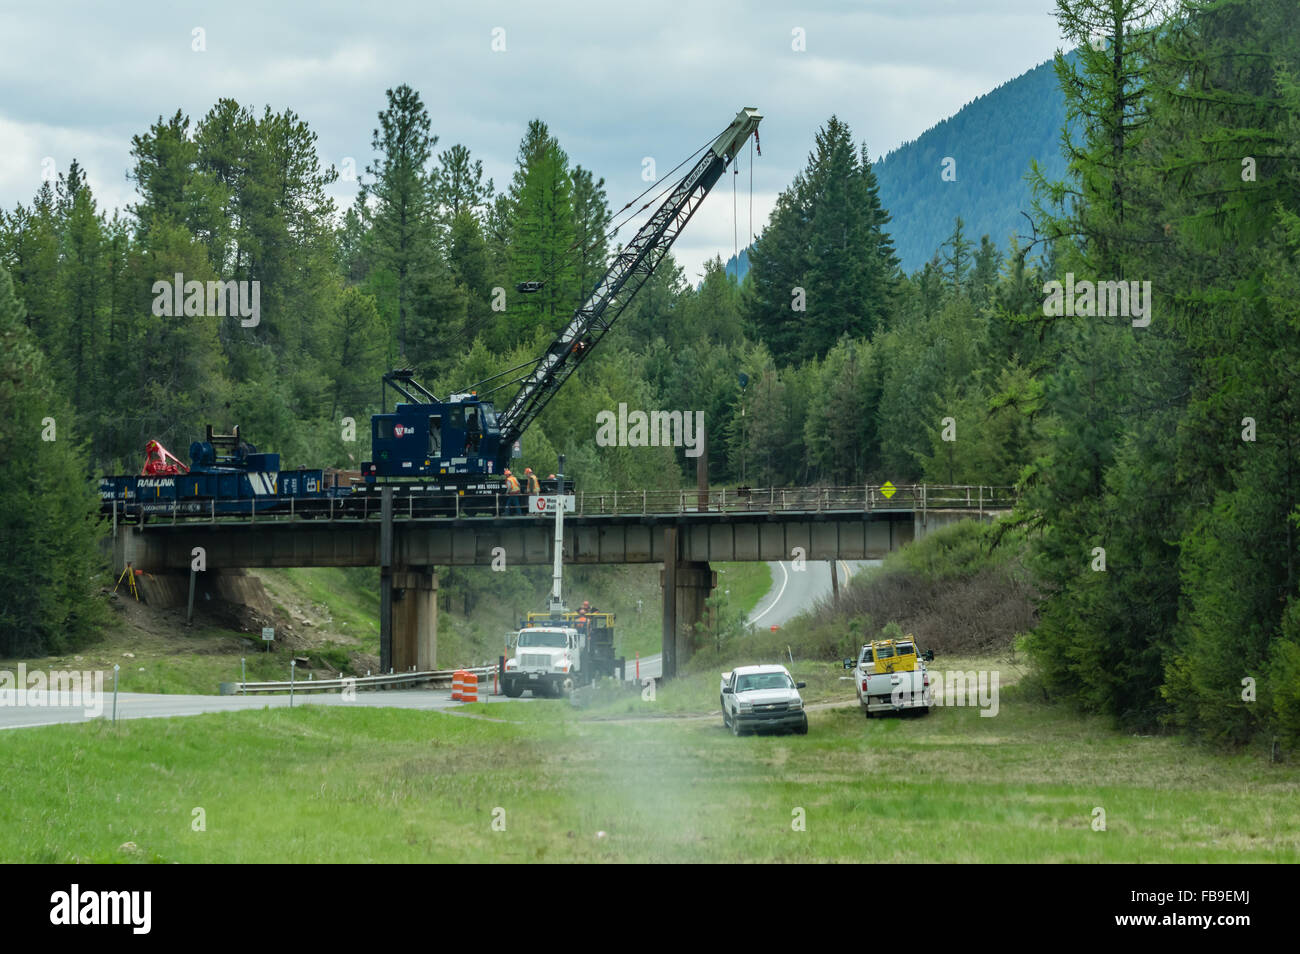 Arbeitnehmer mit einem mobilen Kran, um einen Teil des Titels einer Eisenbahnbrücke zu reparieren.  Forelle-Nebenfluß, Montana, USA Stockfoto